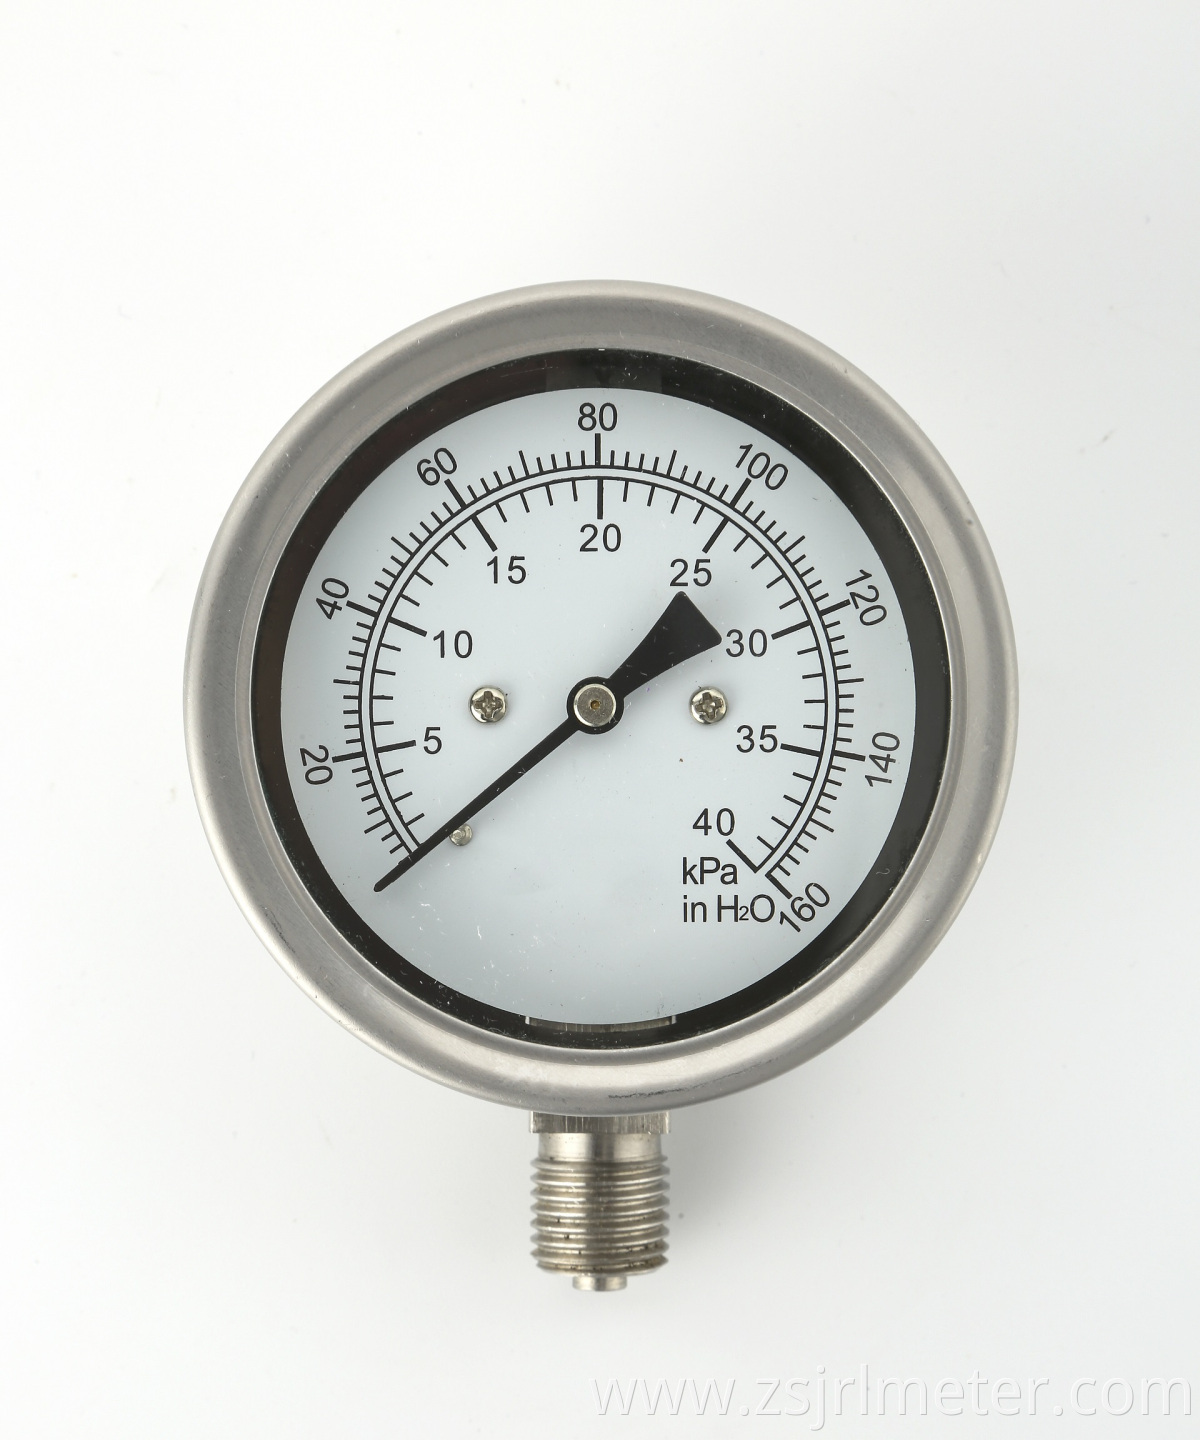 Hot selling good quality capsule stainless steel pressure gauge mimor pressure meter